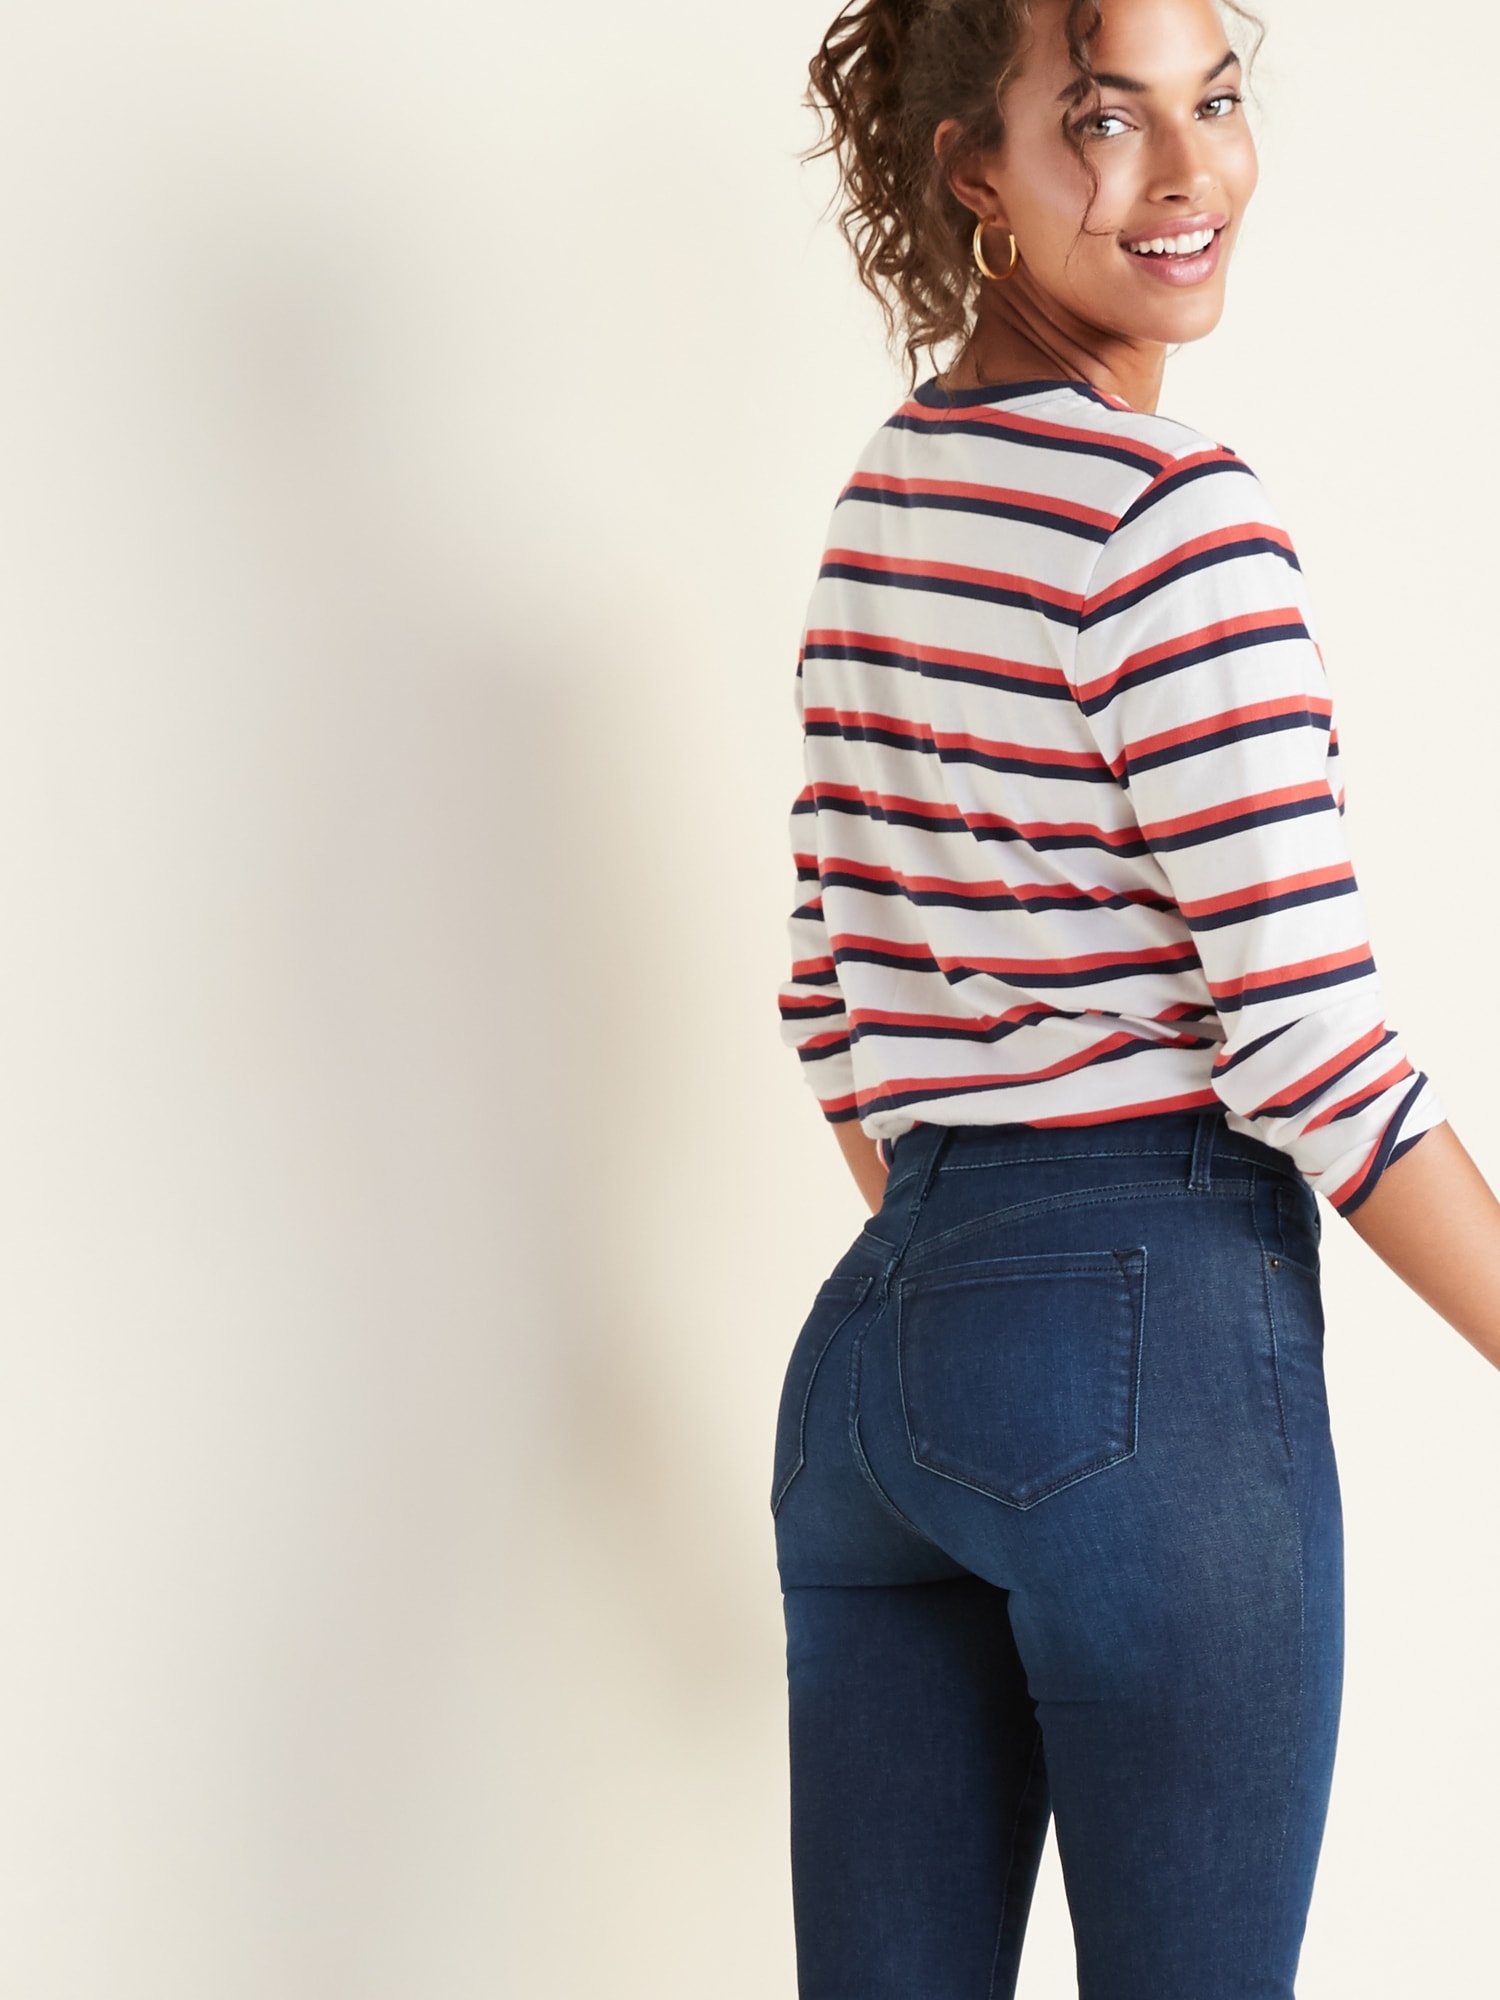 mens designer slim fit jeans sale